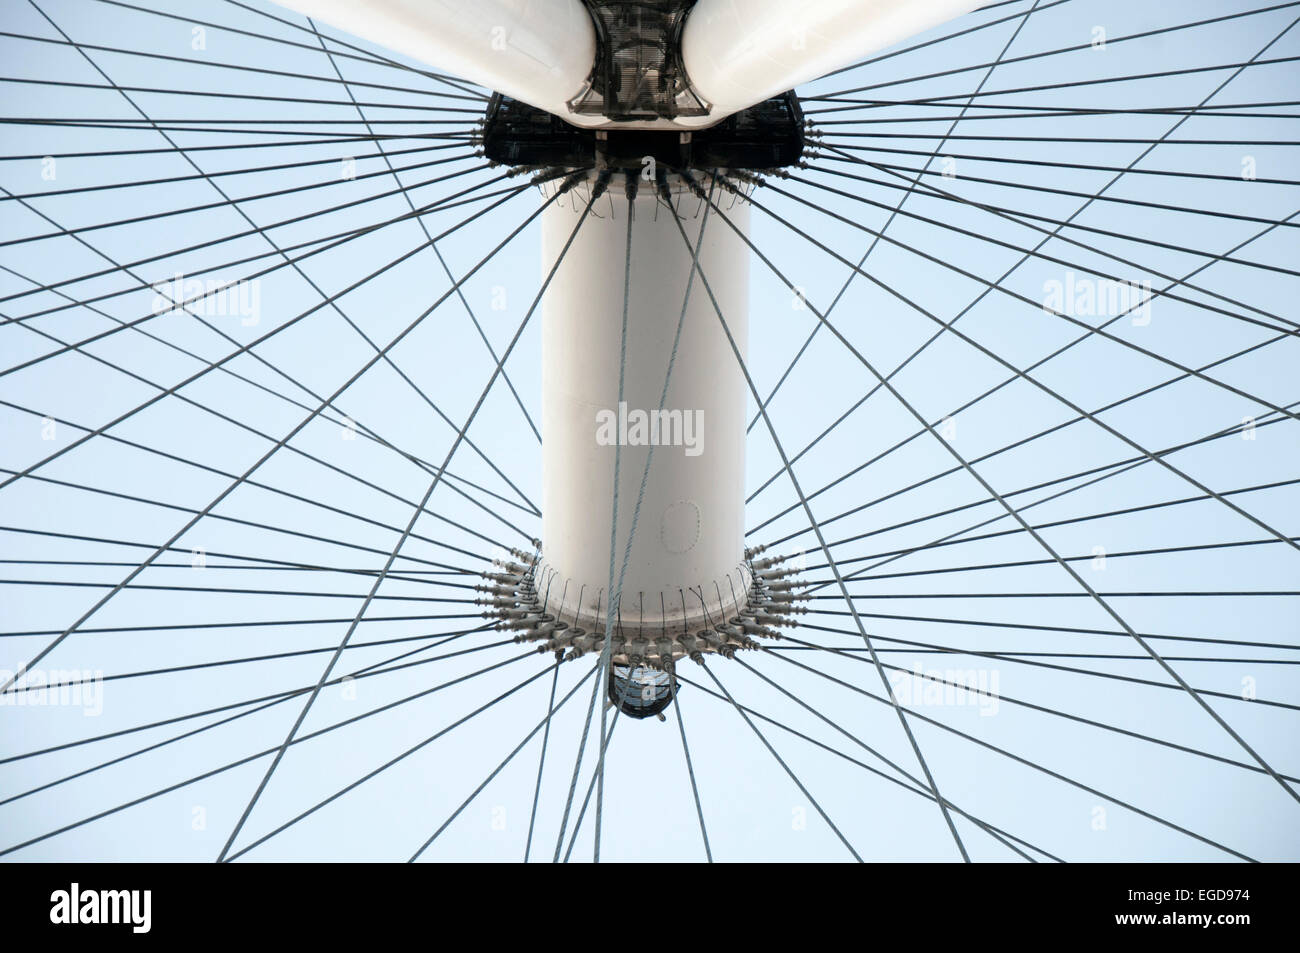 Close up of the London Eye, London England UK Stock Photo